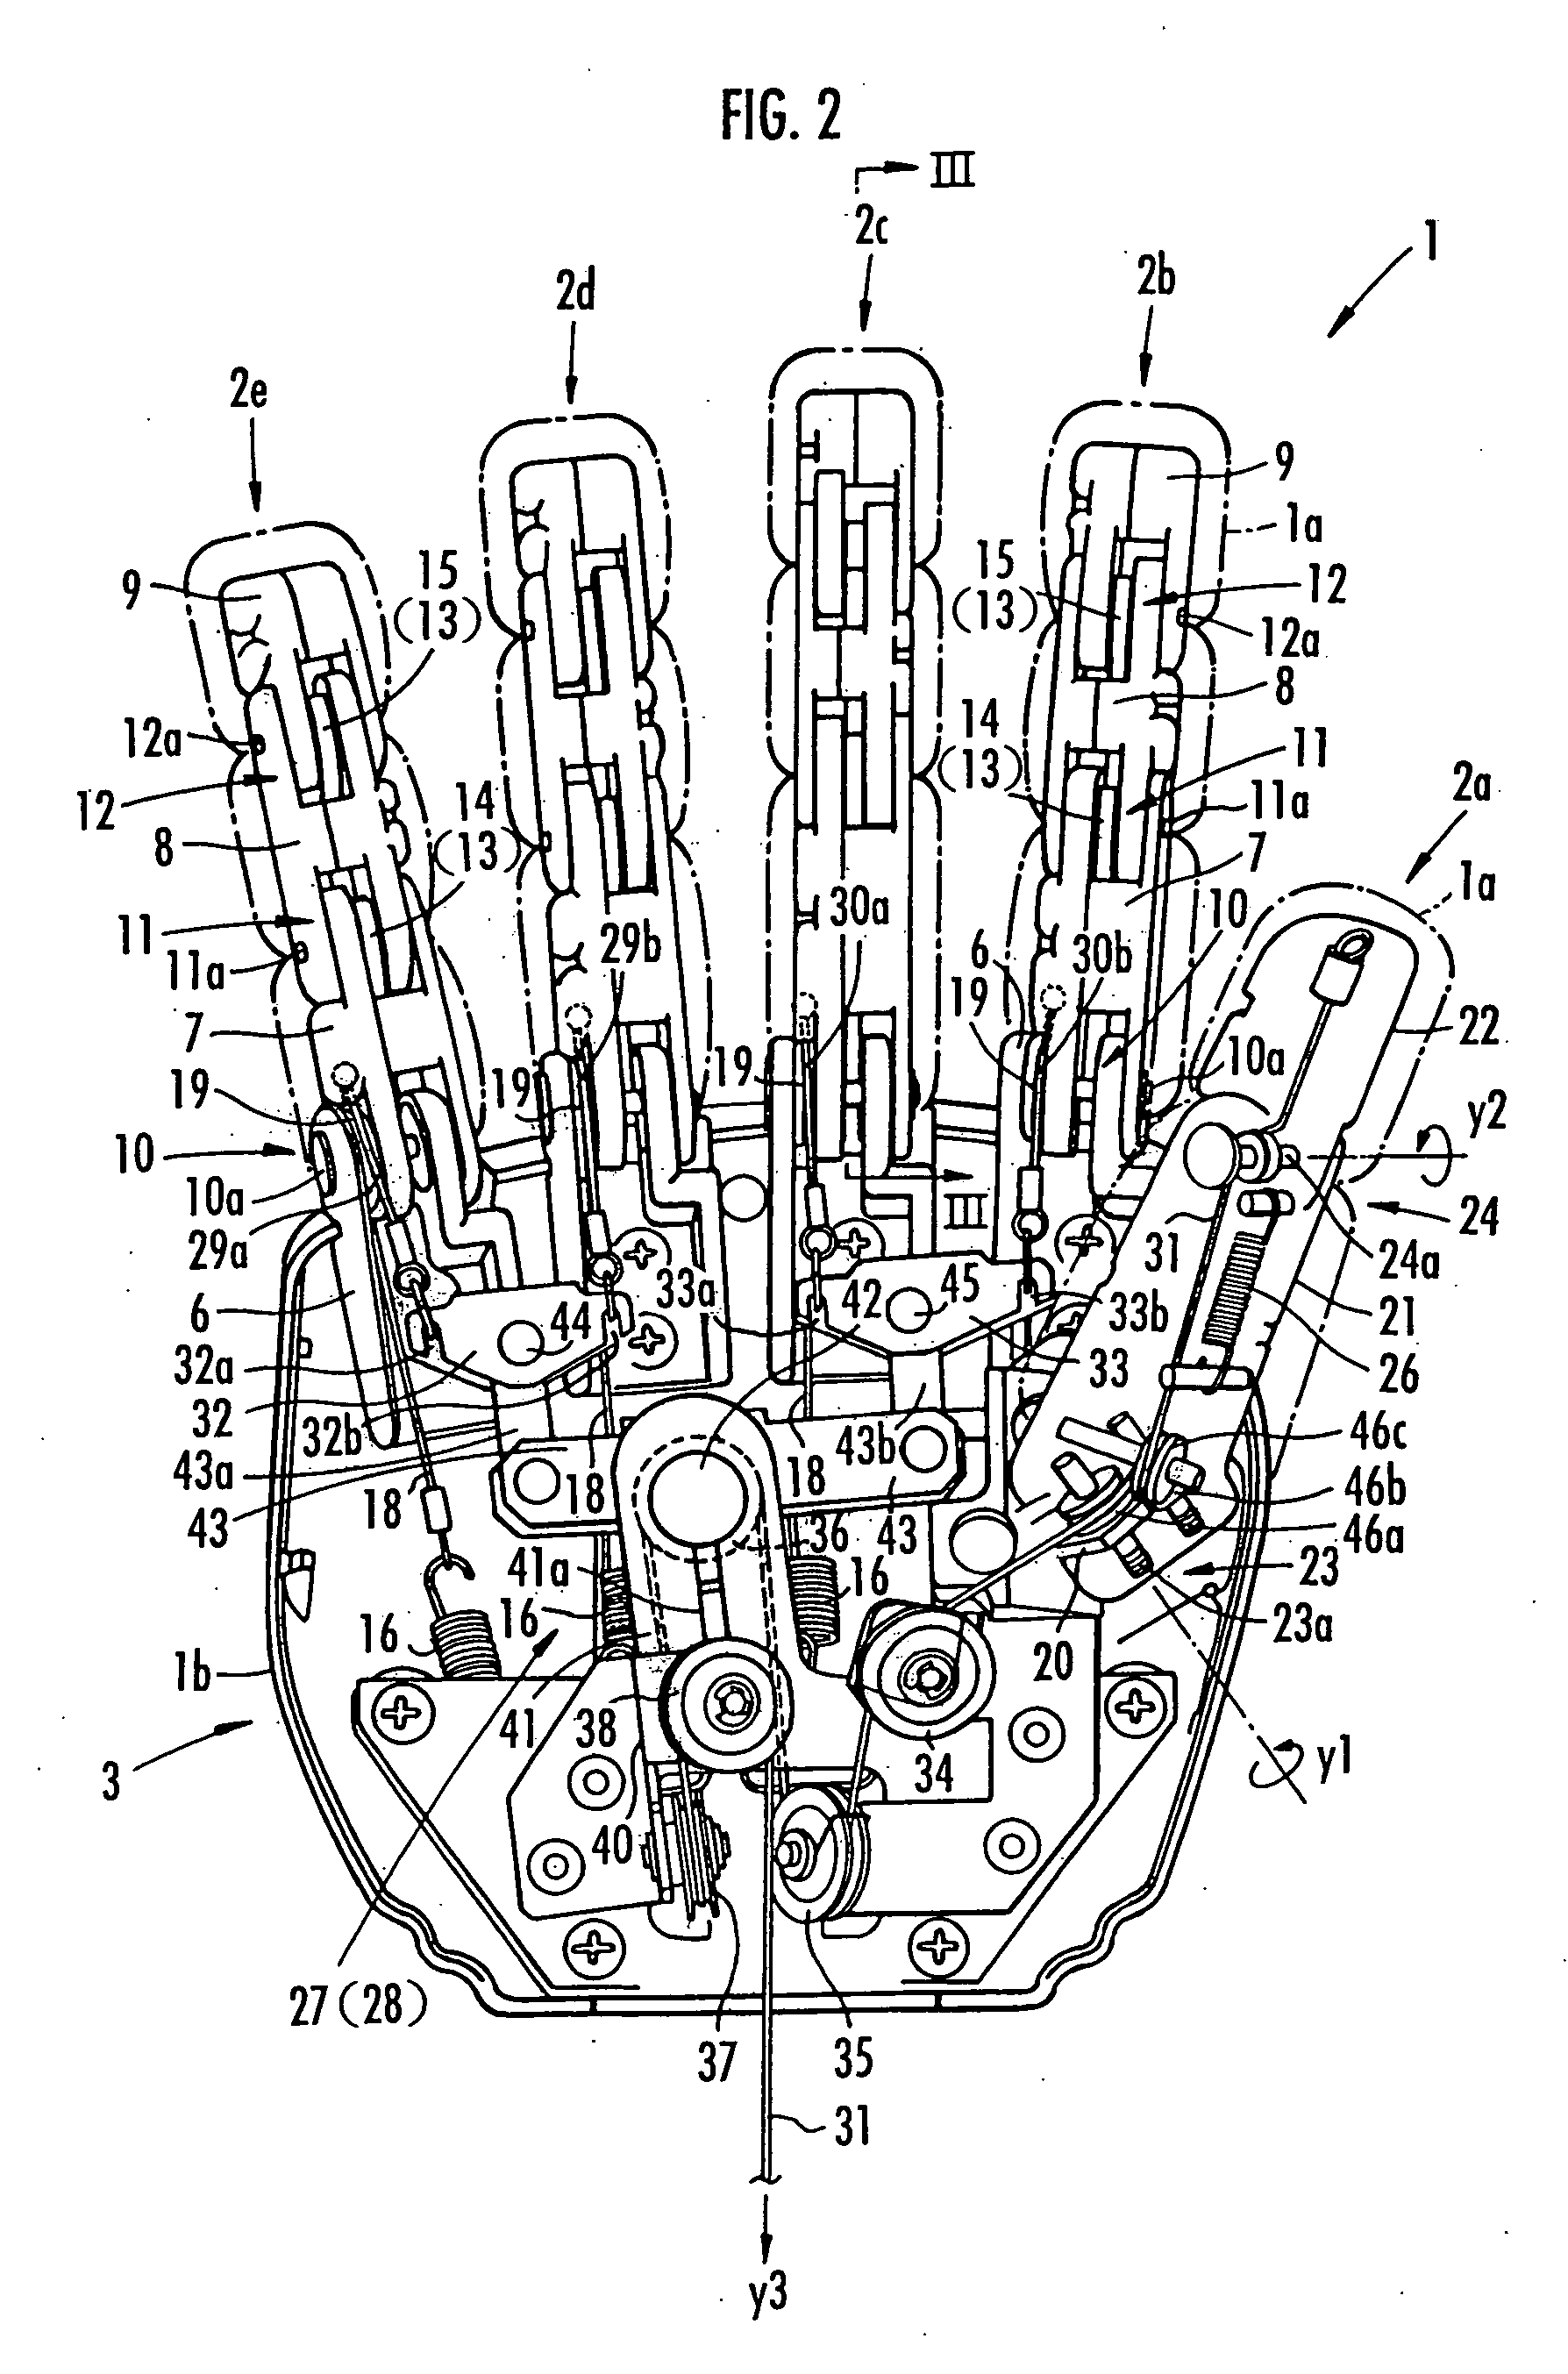 Multi-finger hand device